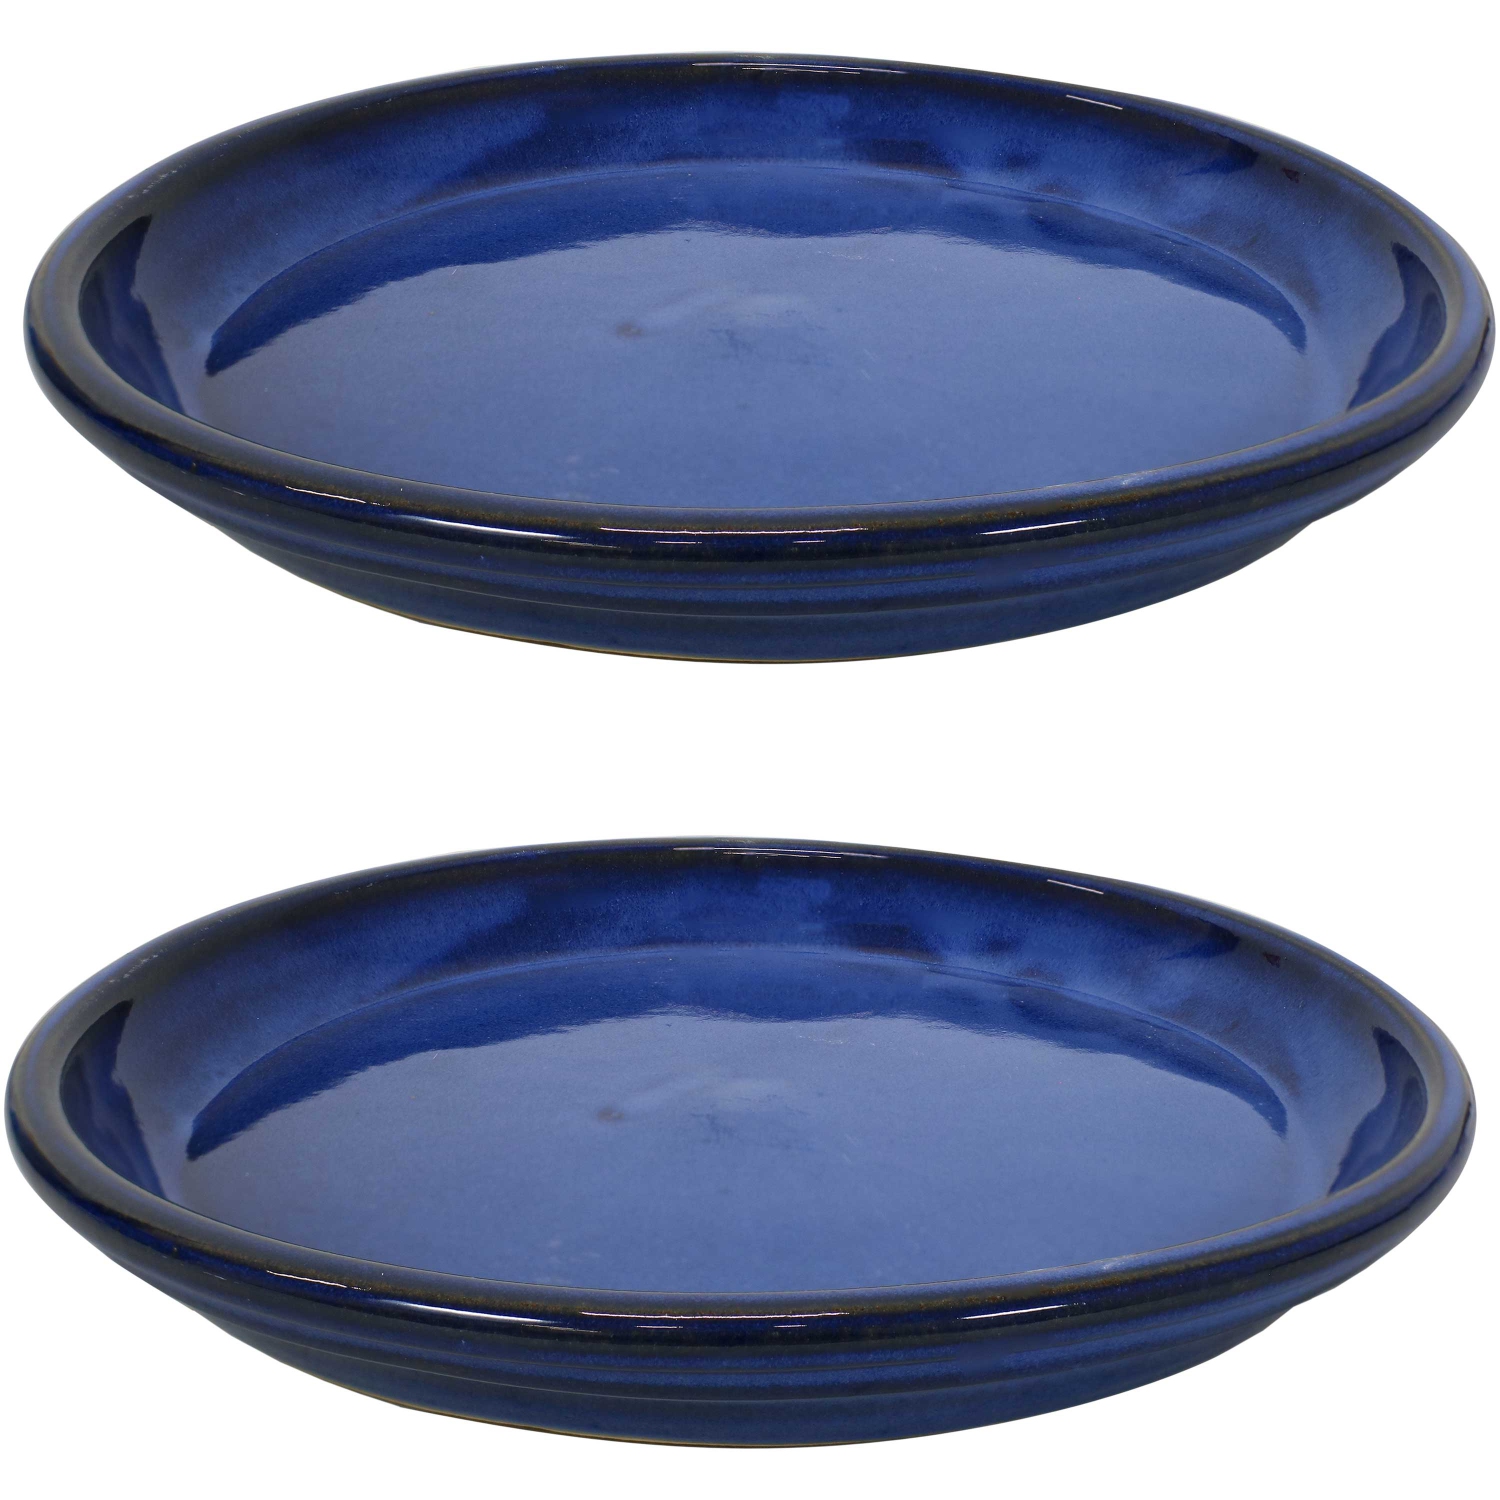 Sunnydaze 12 in Glazed Ceramic Flower Pot/Plant Saucer - Blue - Set of 2